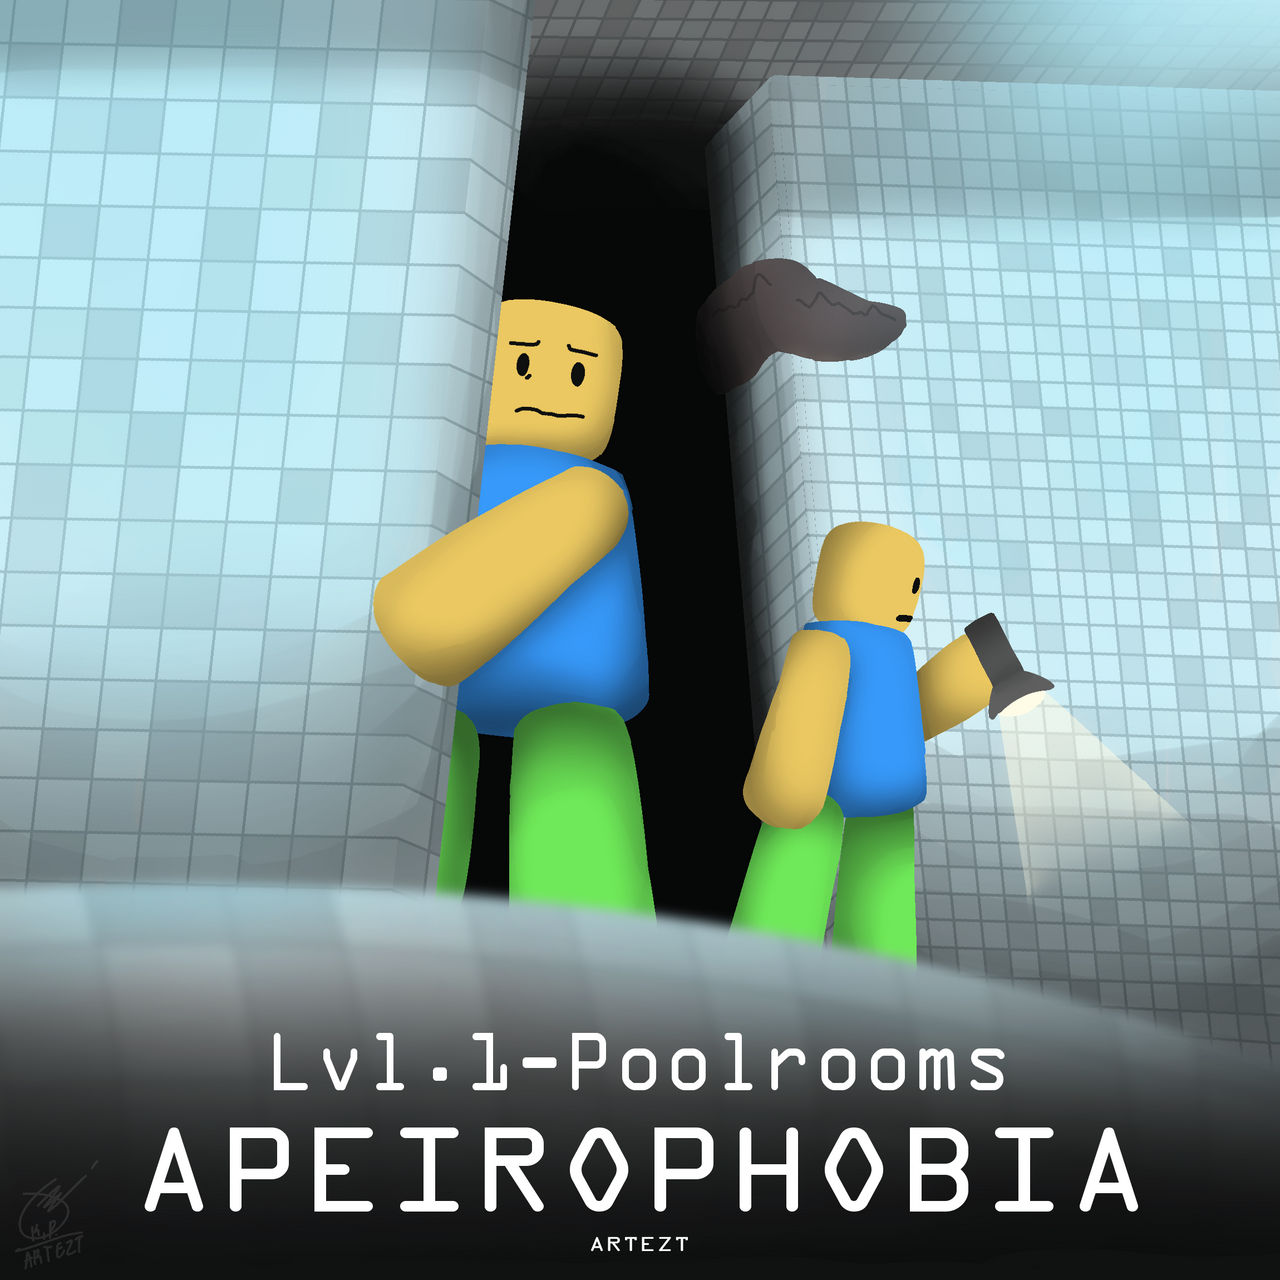 Apeirophobia Roblox Wiki